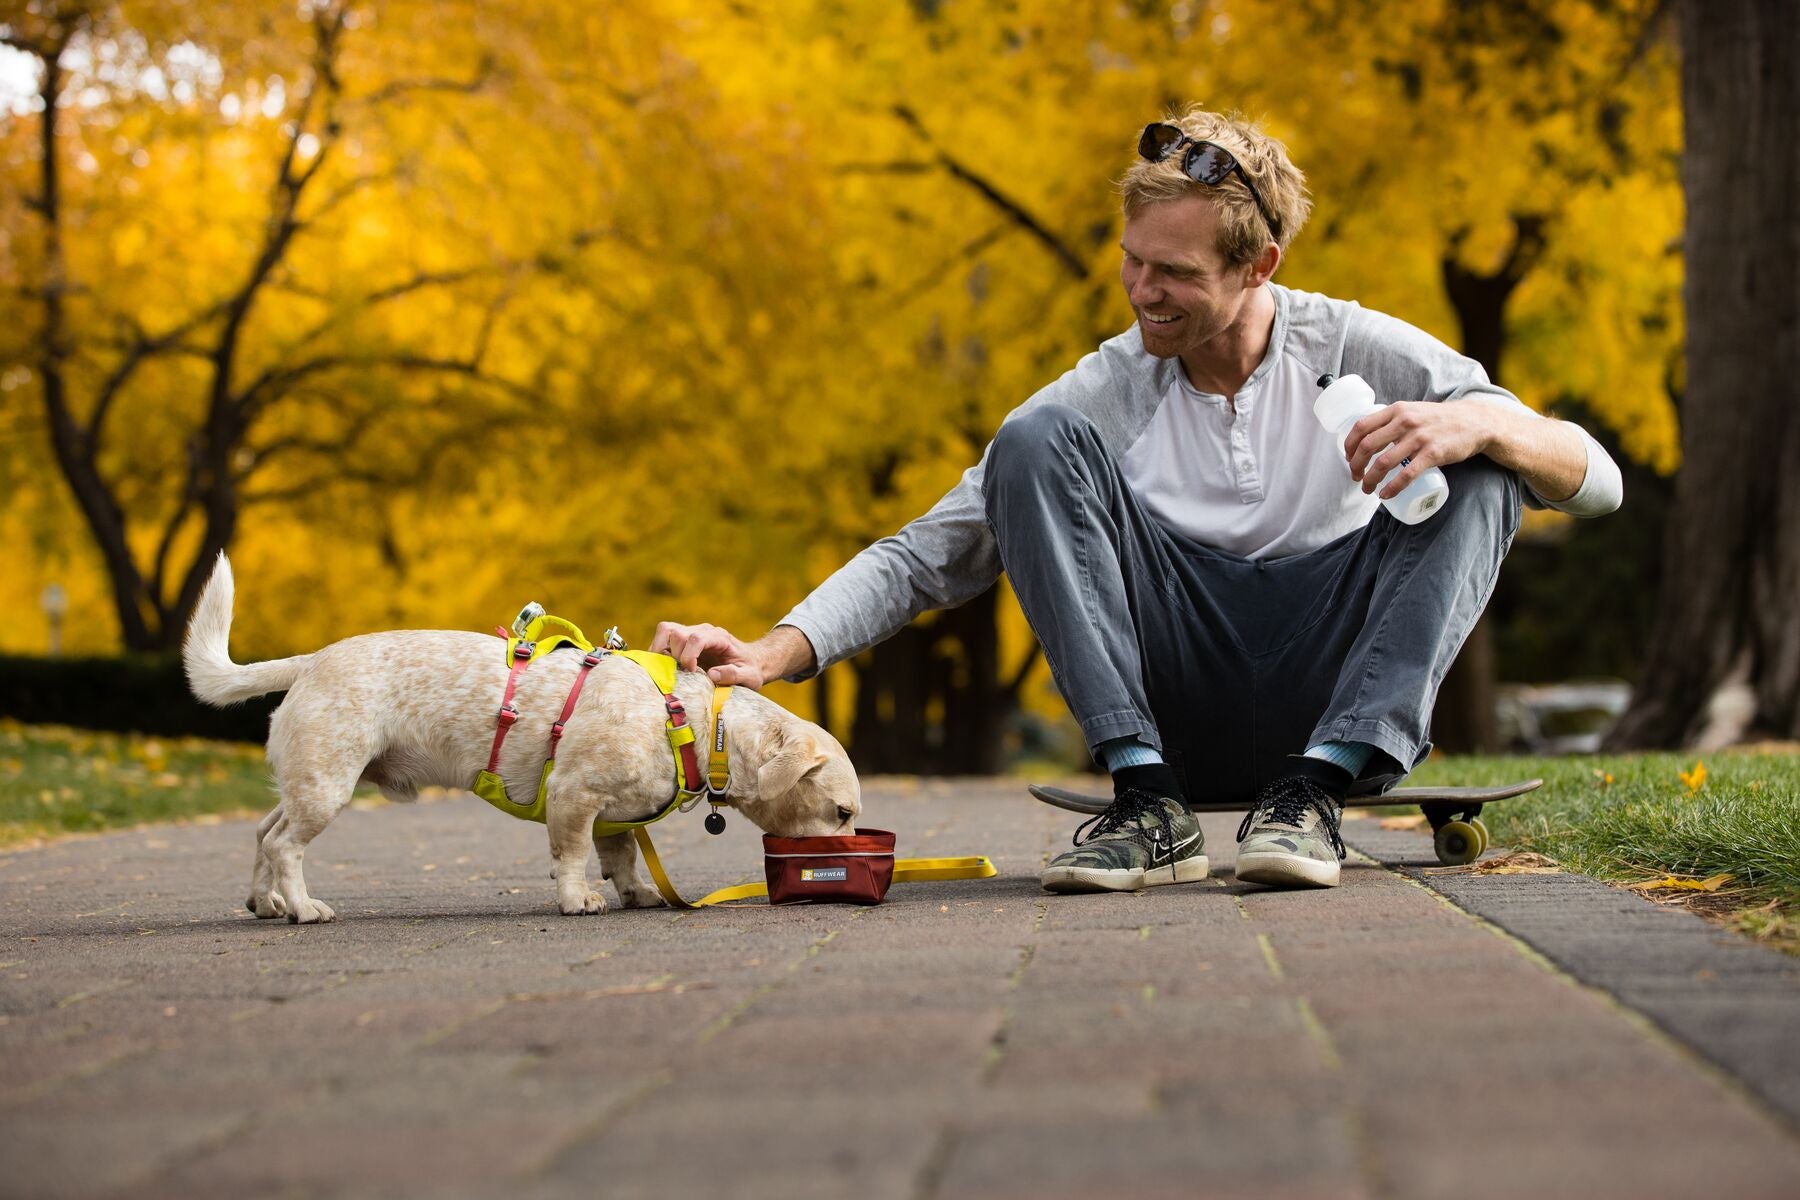 Man sitting on a skateboard feeding a small dog